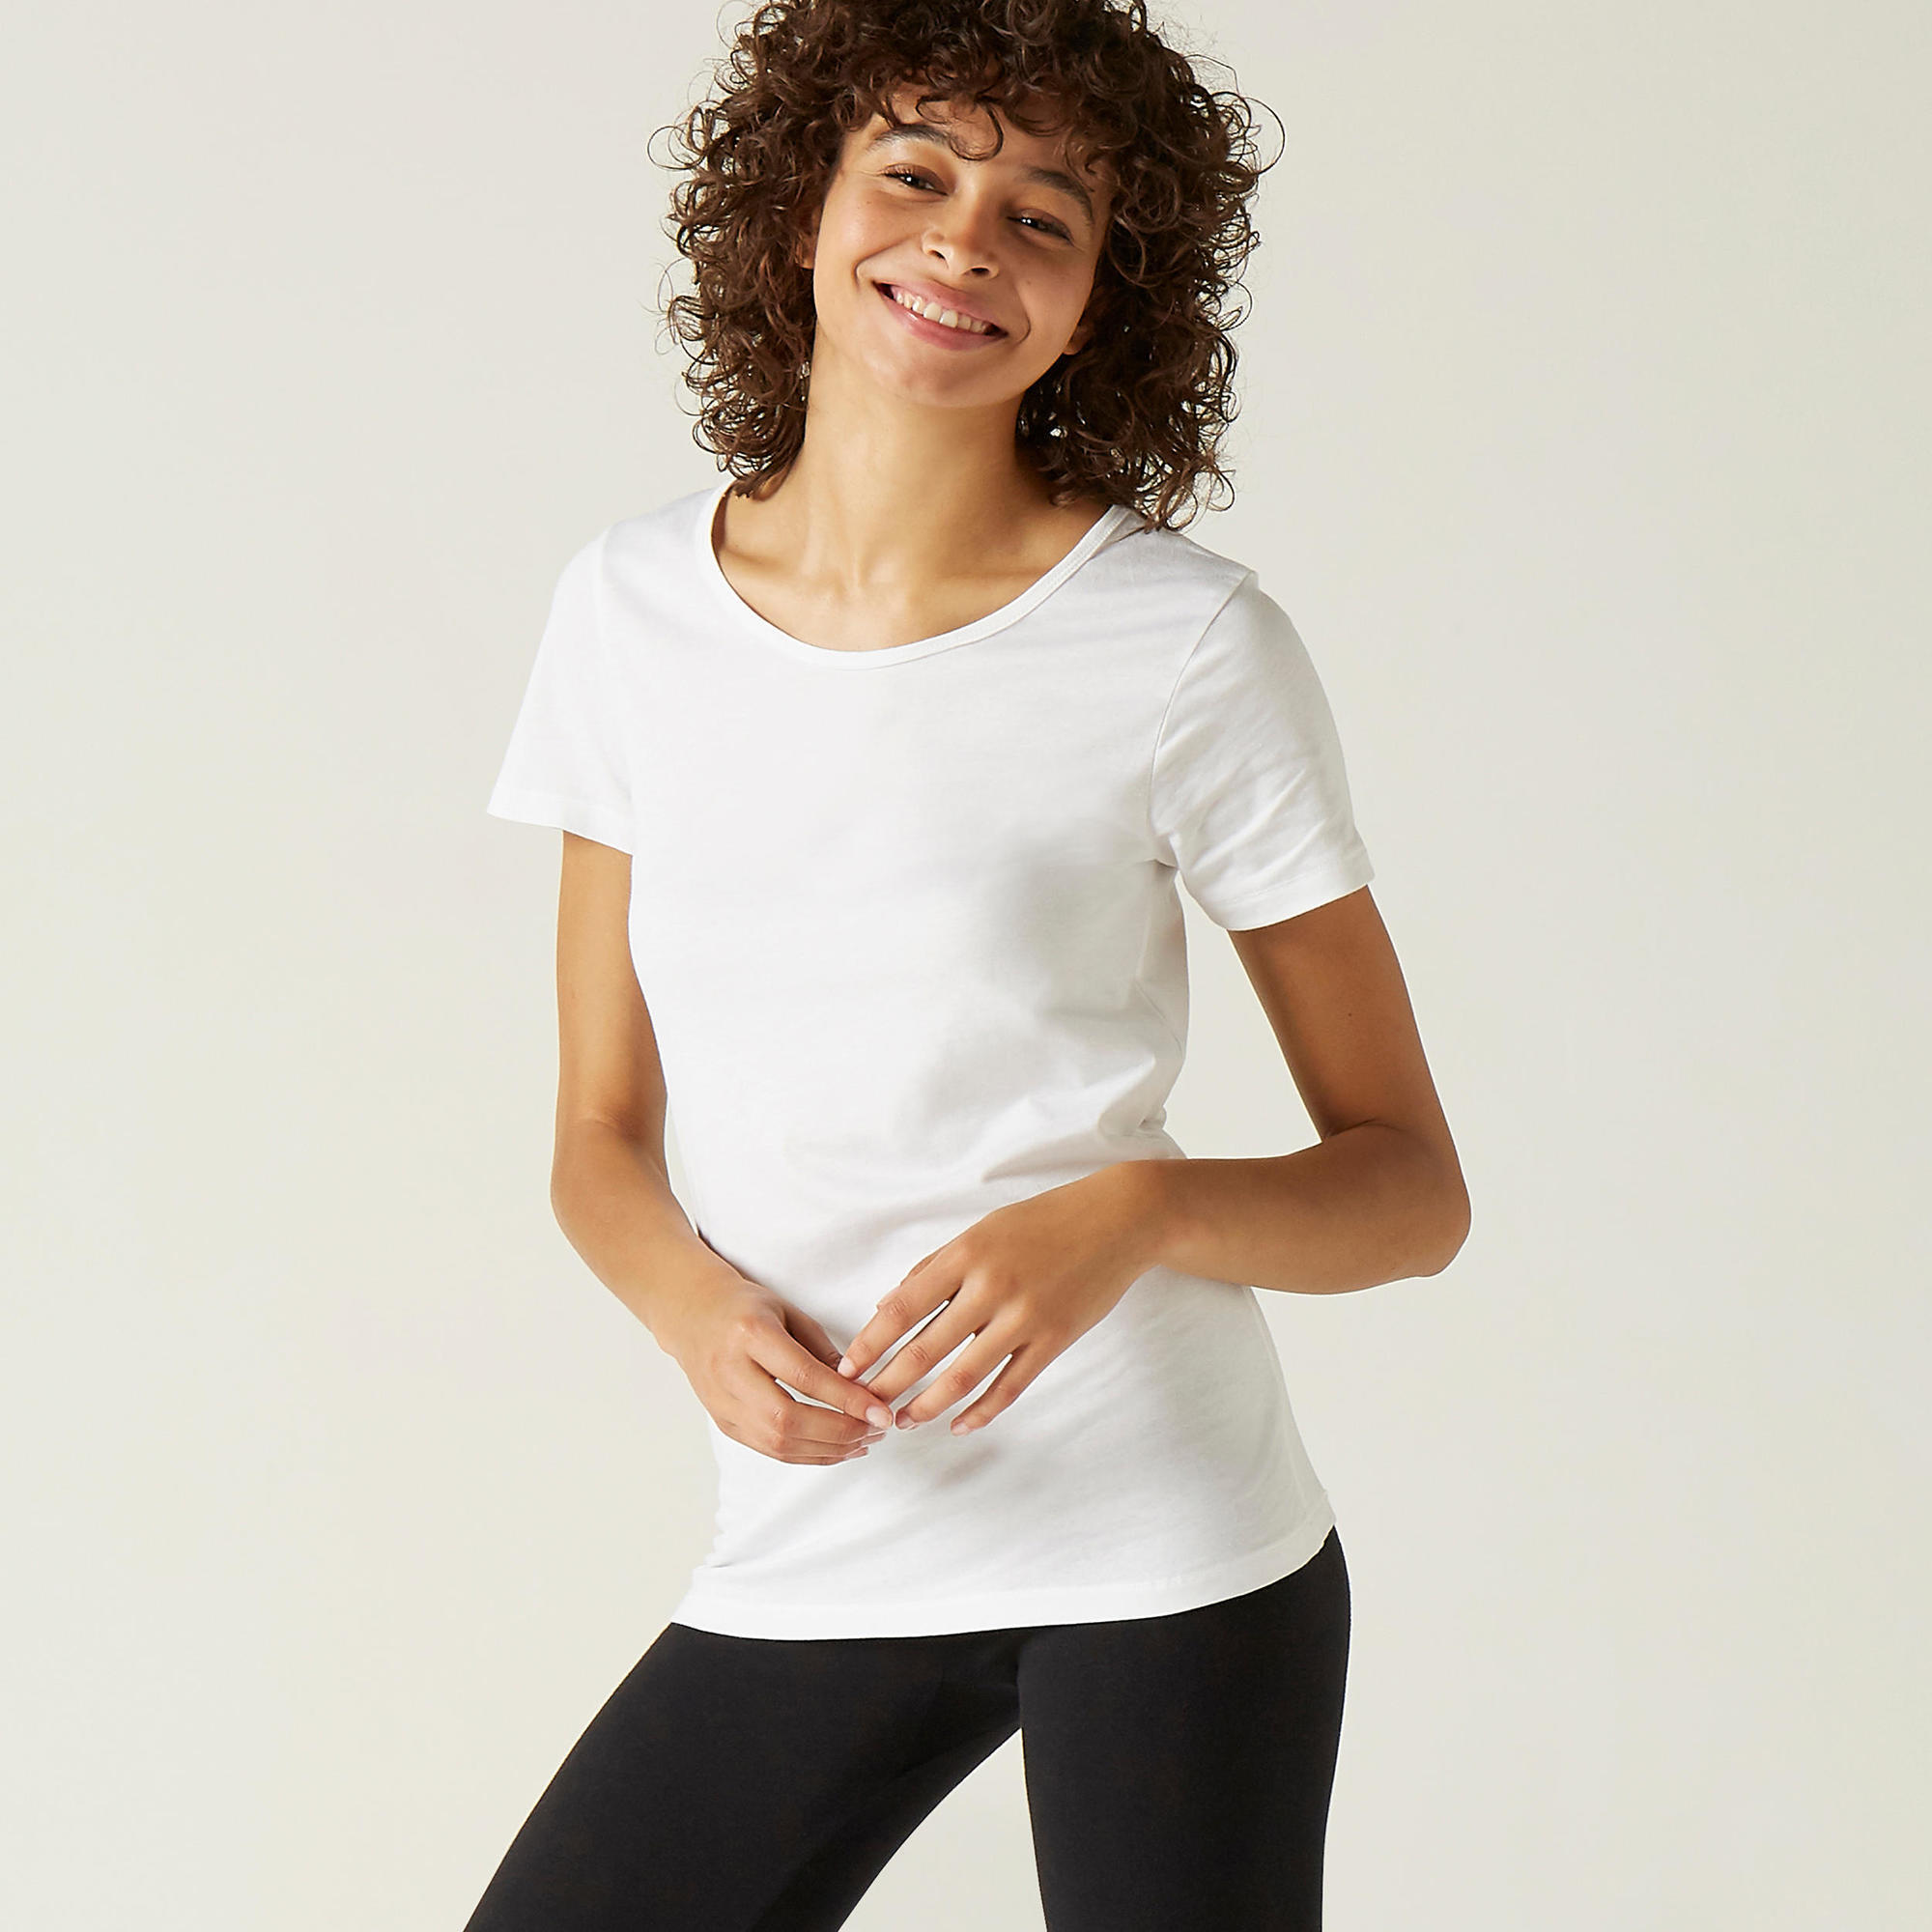 DOMYOS Women's Fitness T-Shirt 100 - White